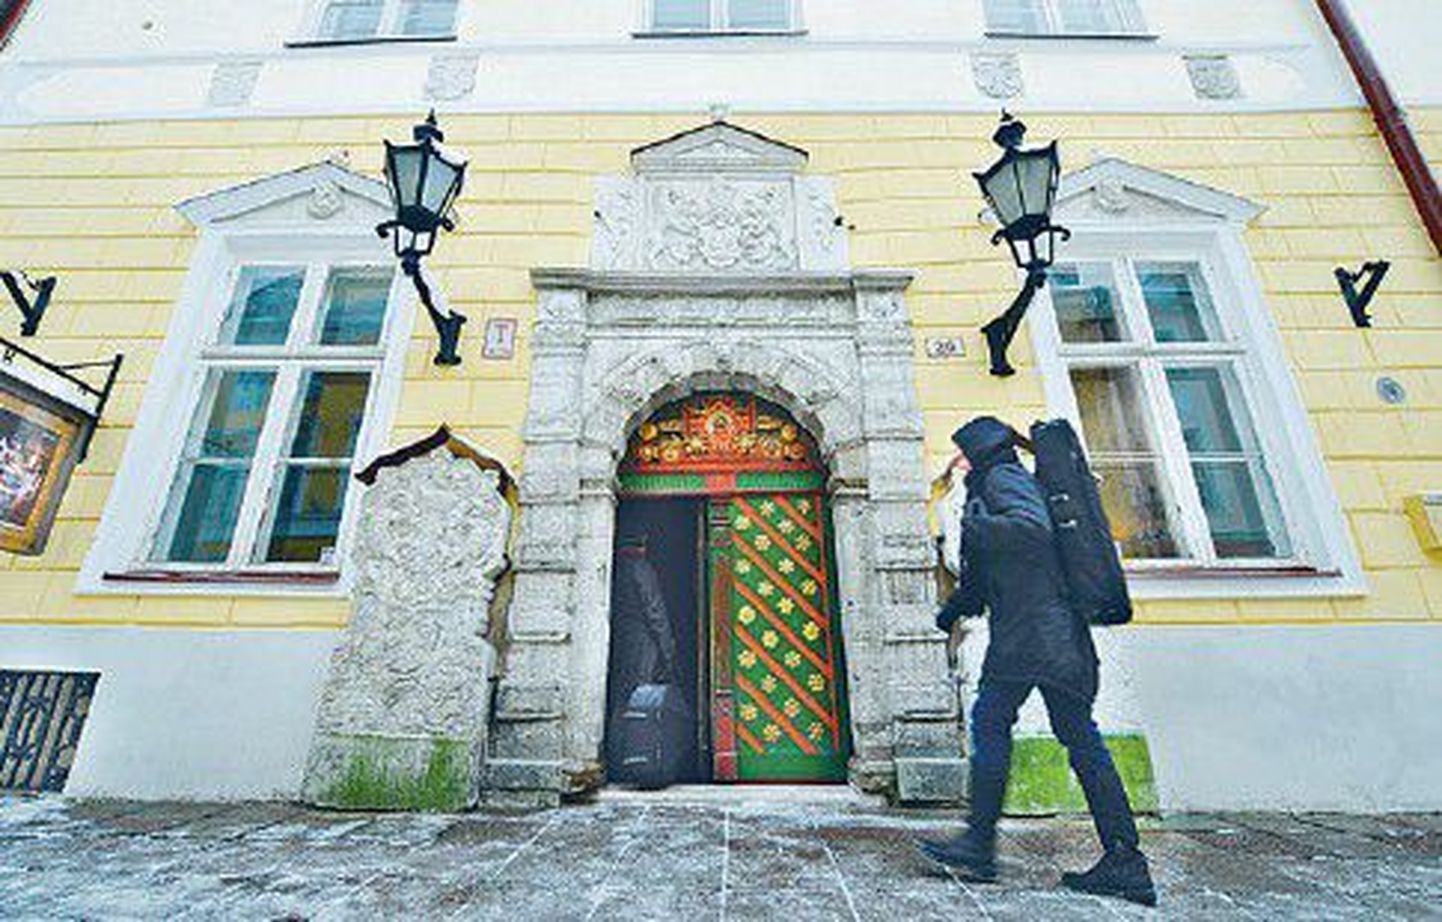 Сейчас этот дом принадлежит Таллинну, но правительство хочет вернуть его Братству черноголовых.